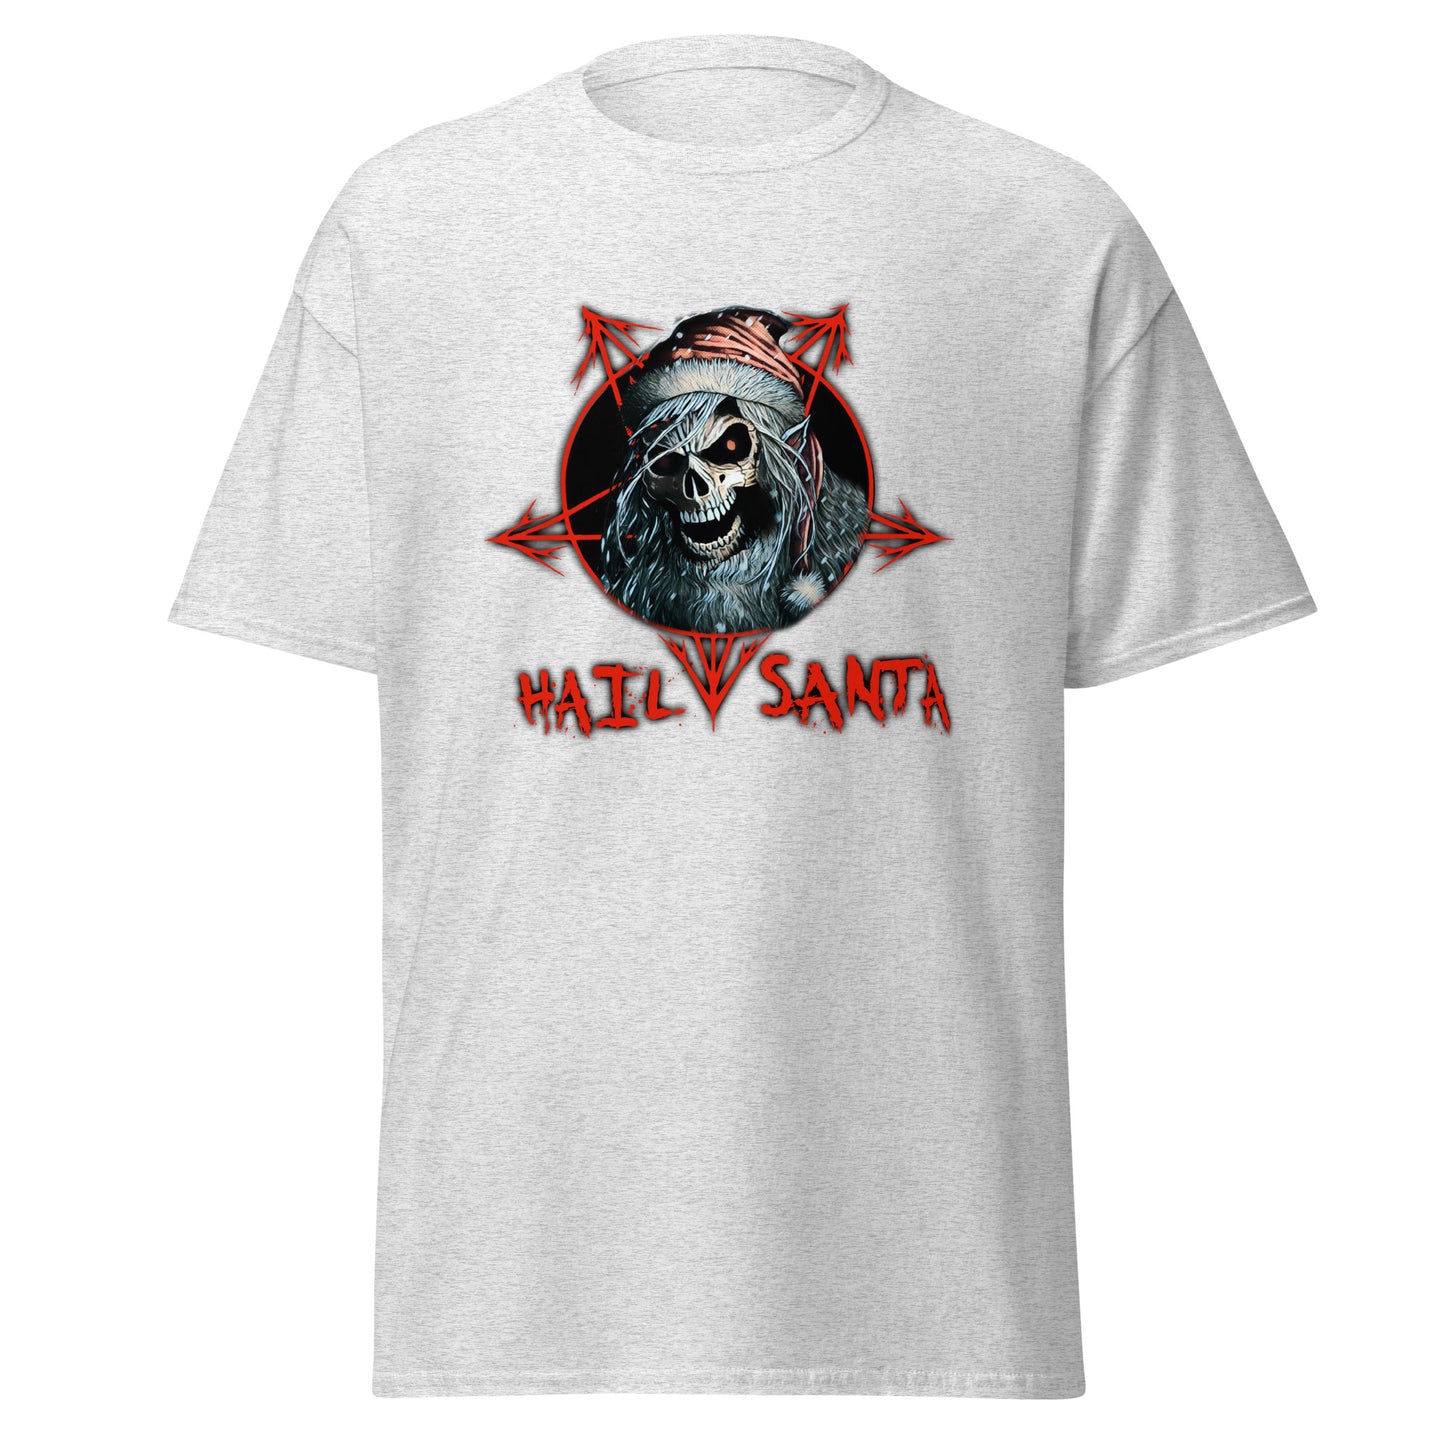 Hail Santa T-Shirt - A Darkly Festive Salute